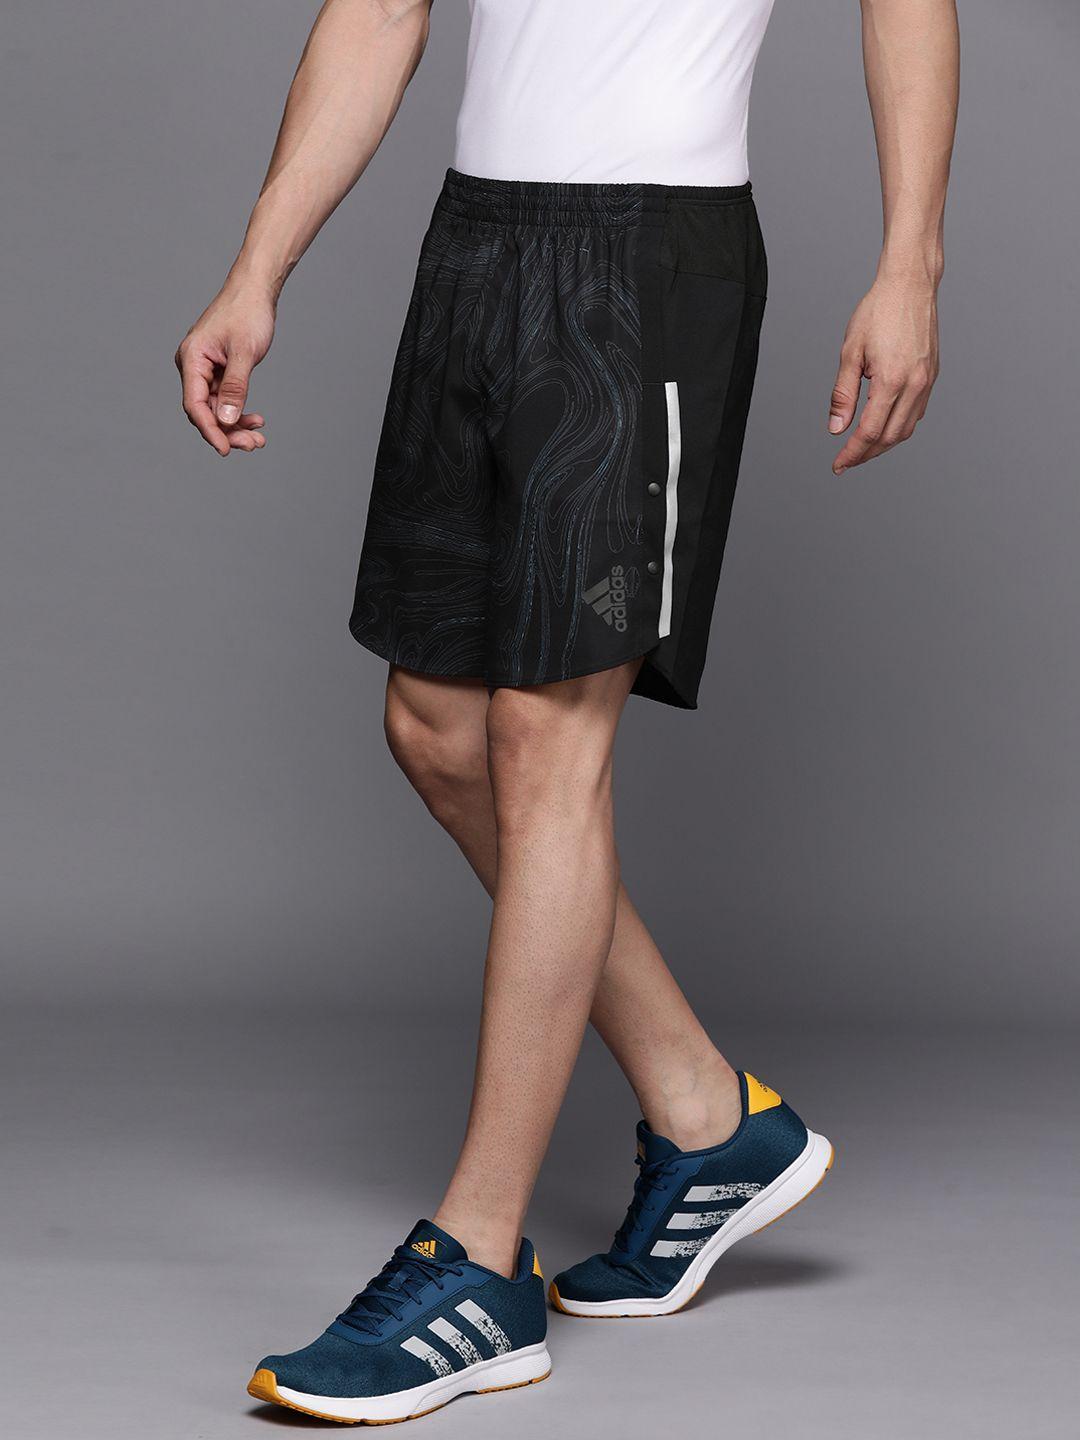 adidas men black & navy blue running sports shorts